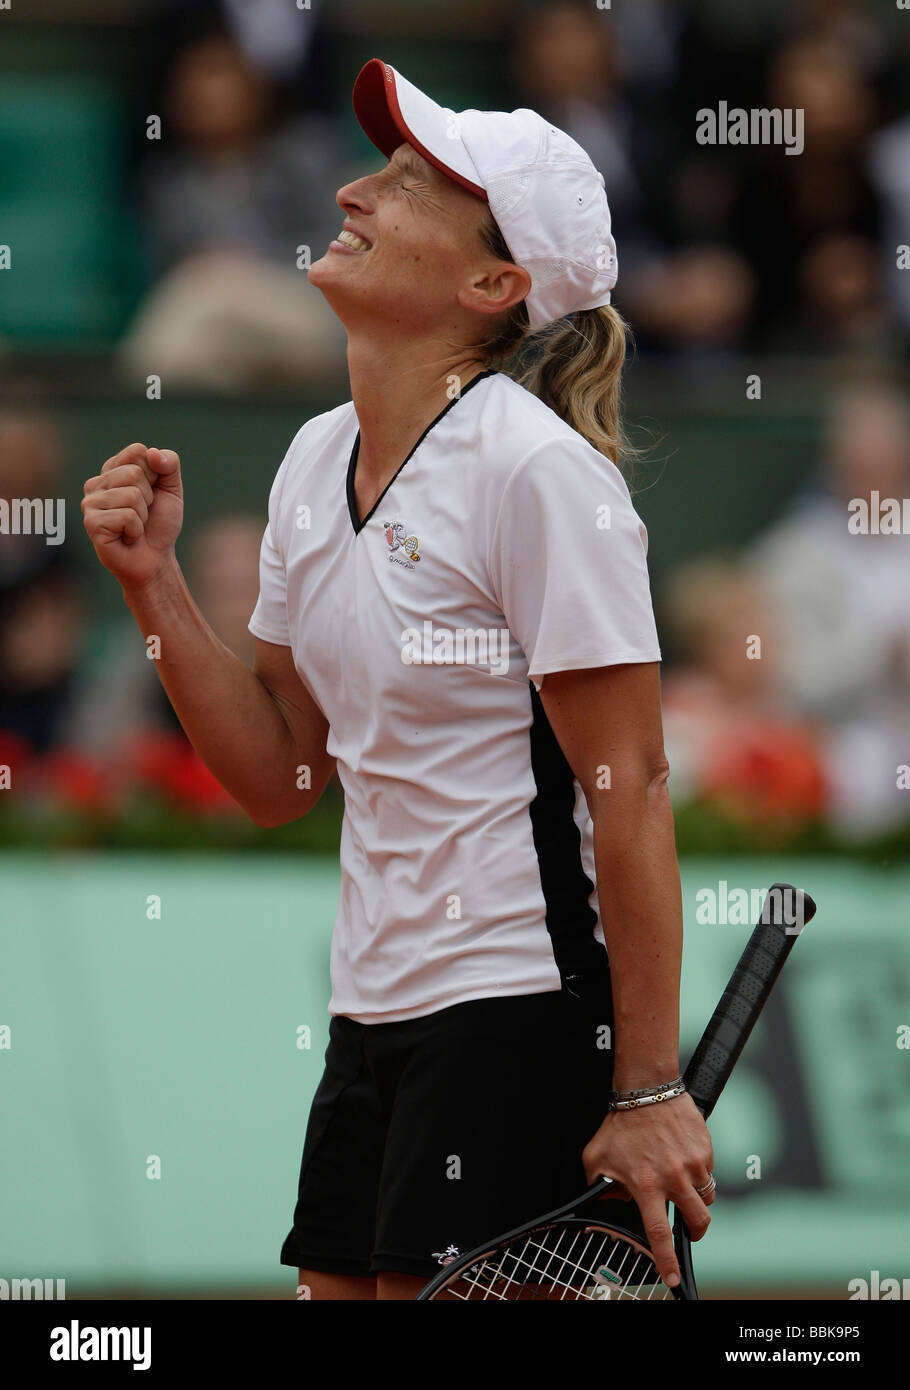 Tennis player Tathiana Garbin célébrer sa victoire à l'Open de France 2009 Banque D'Images